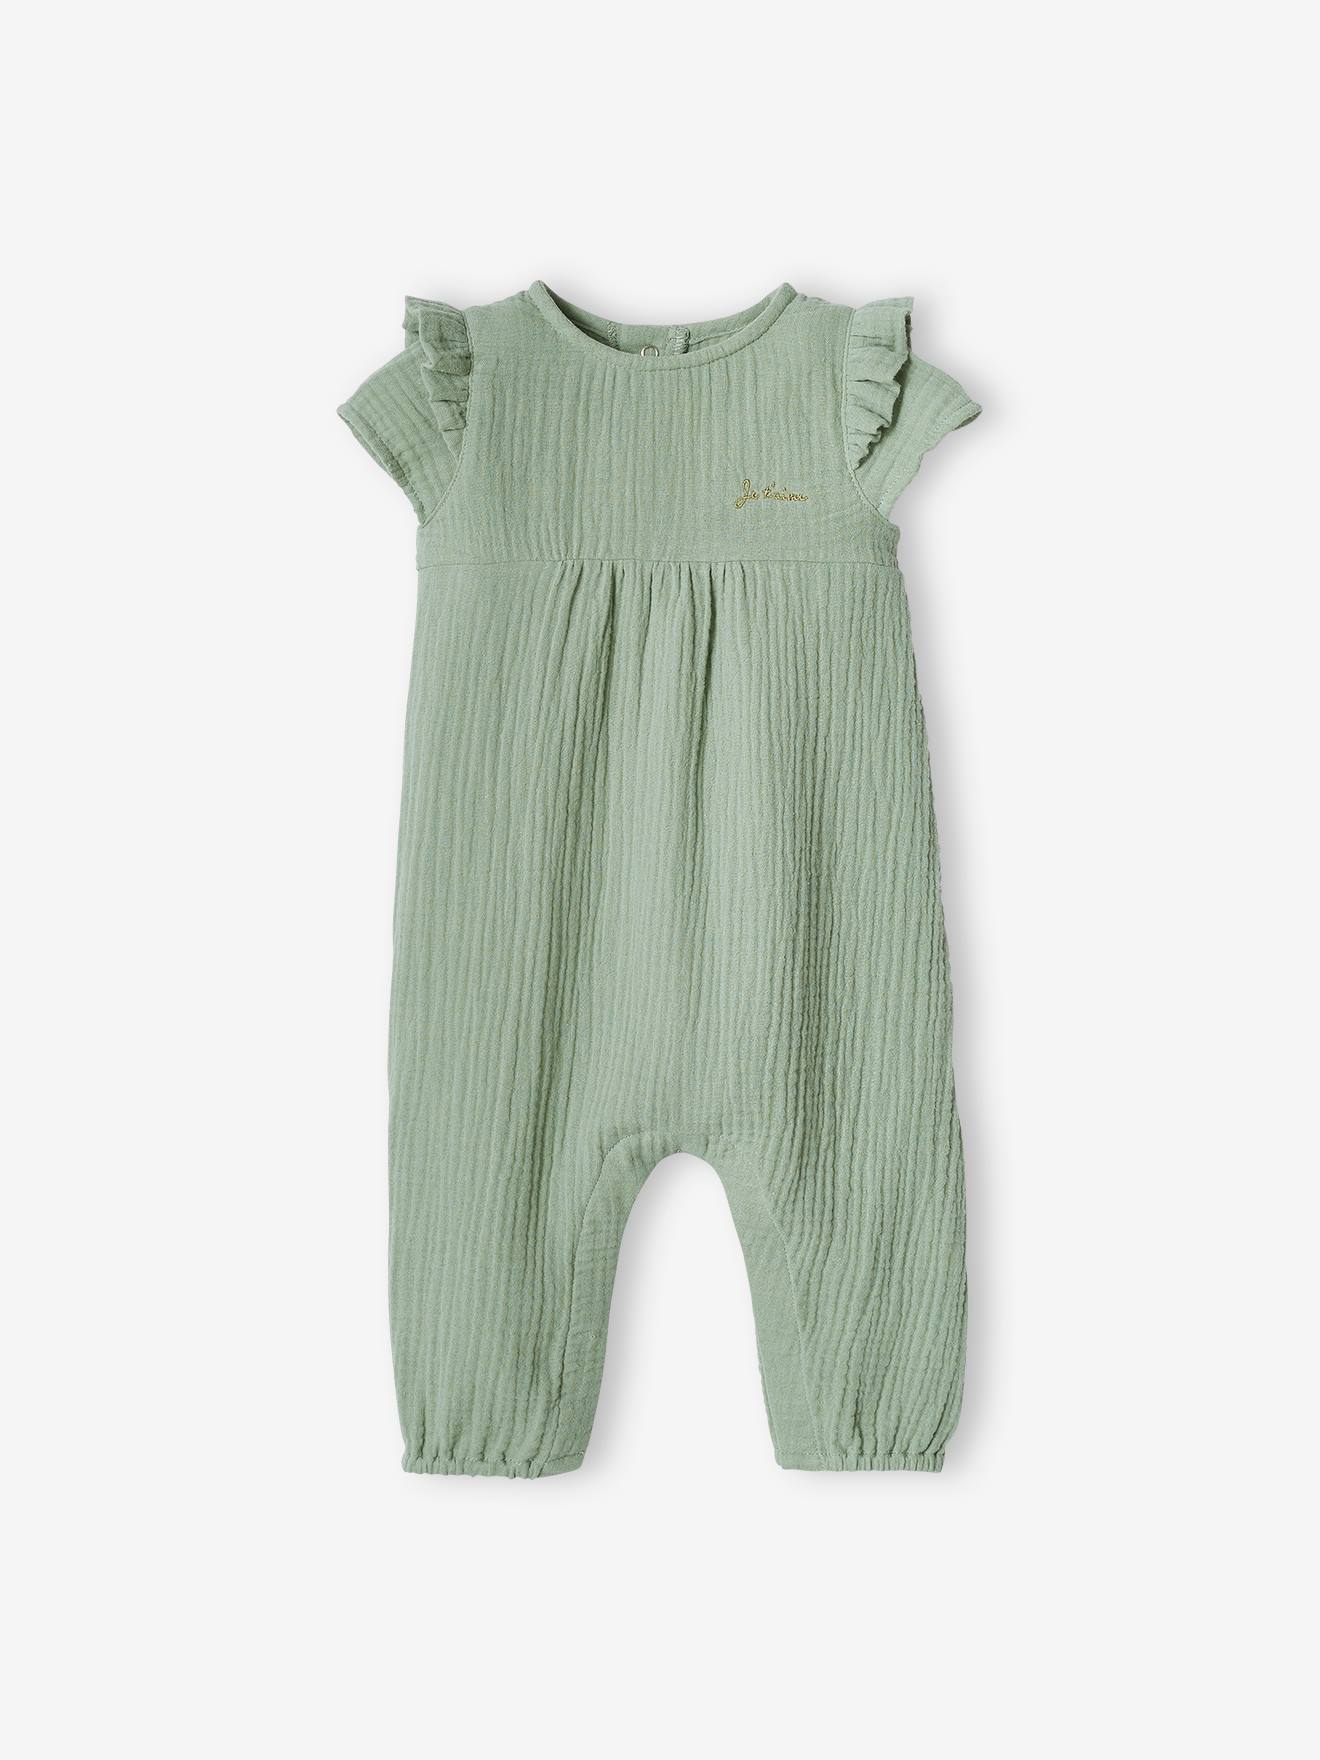 Combinaison bébé garçon en lin et coton - vert céladon, Bébé